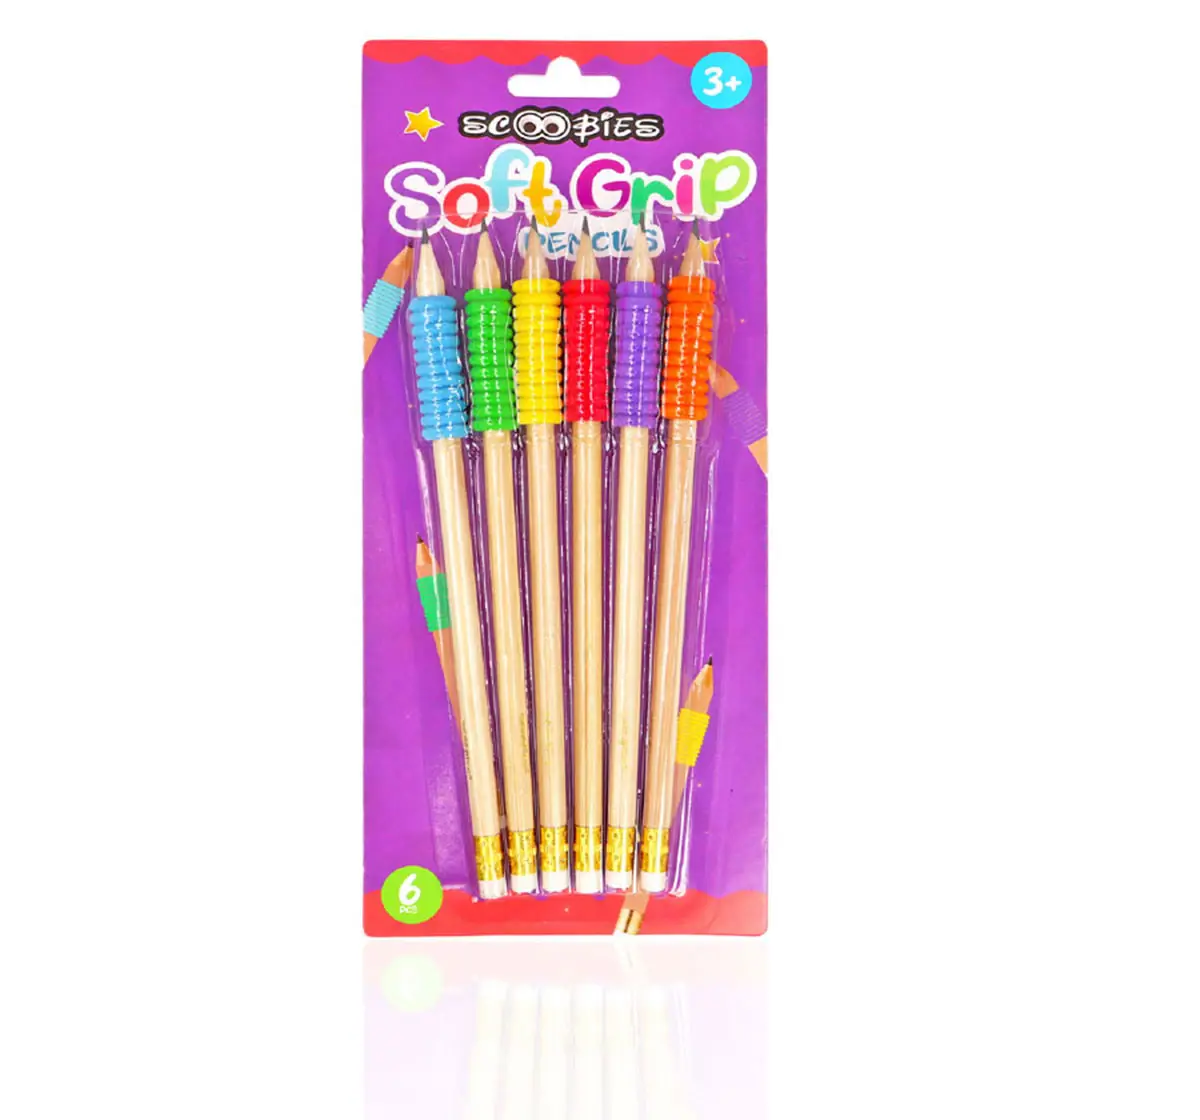 Scoobies Neon Soft Grip Pencils Multicolour, 3Y+